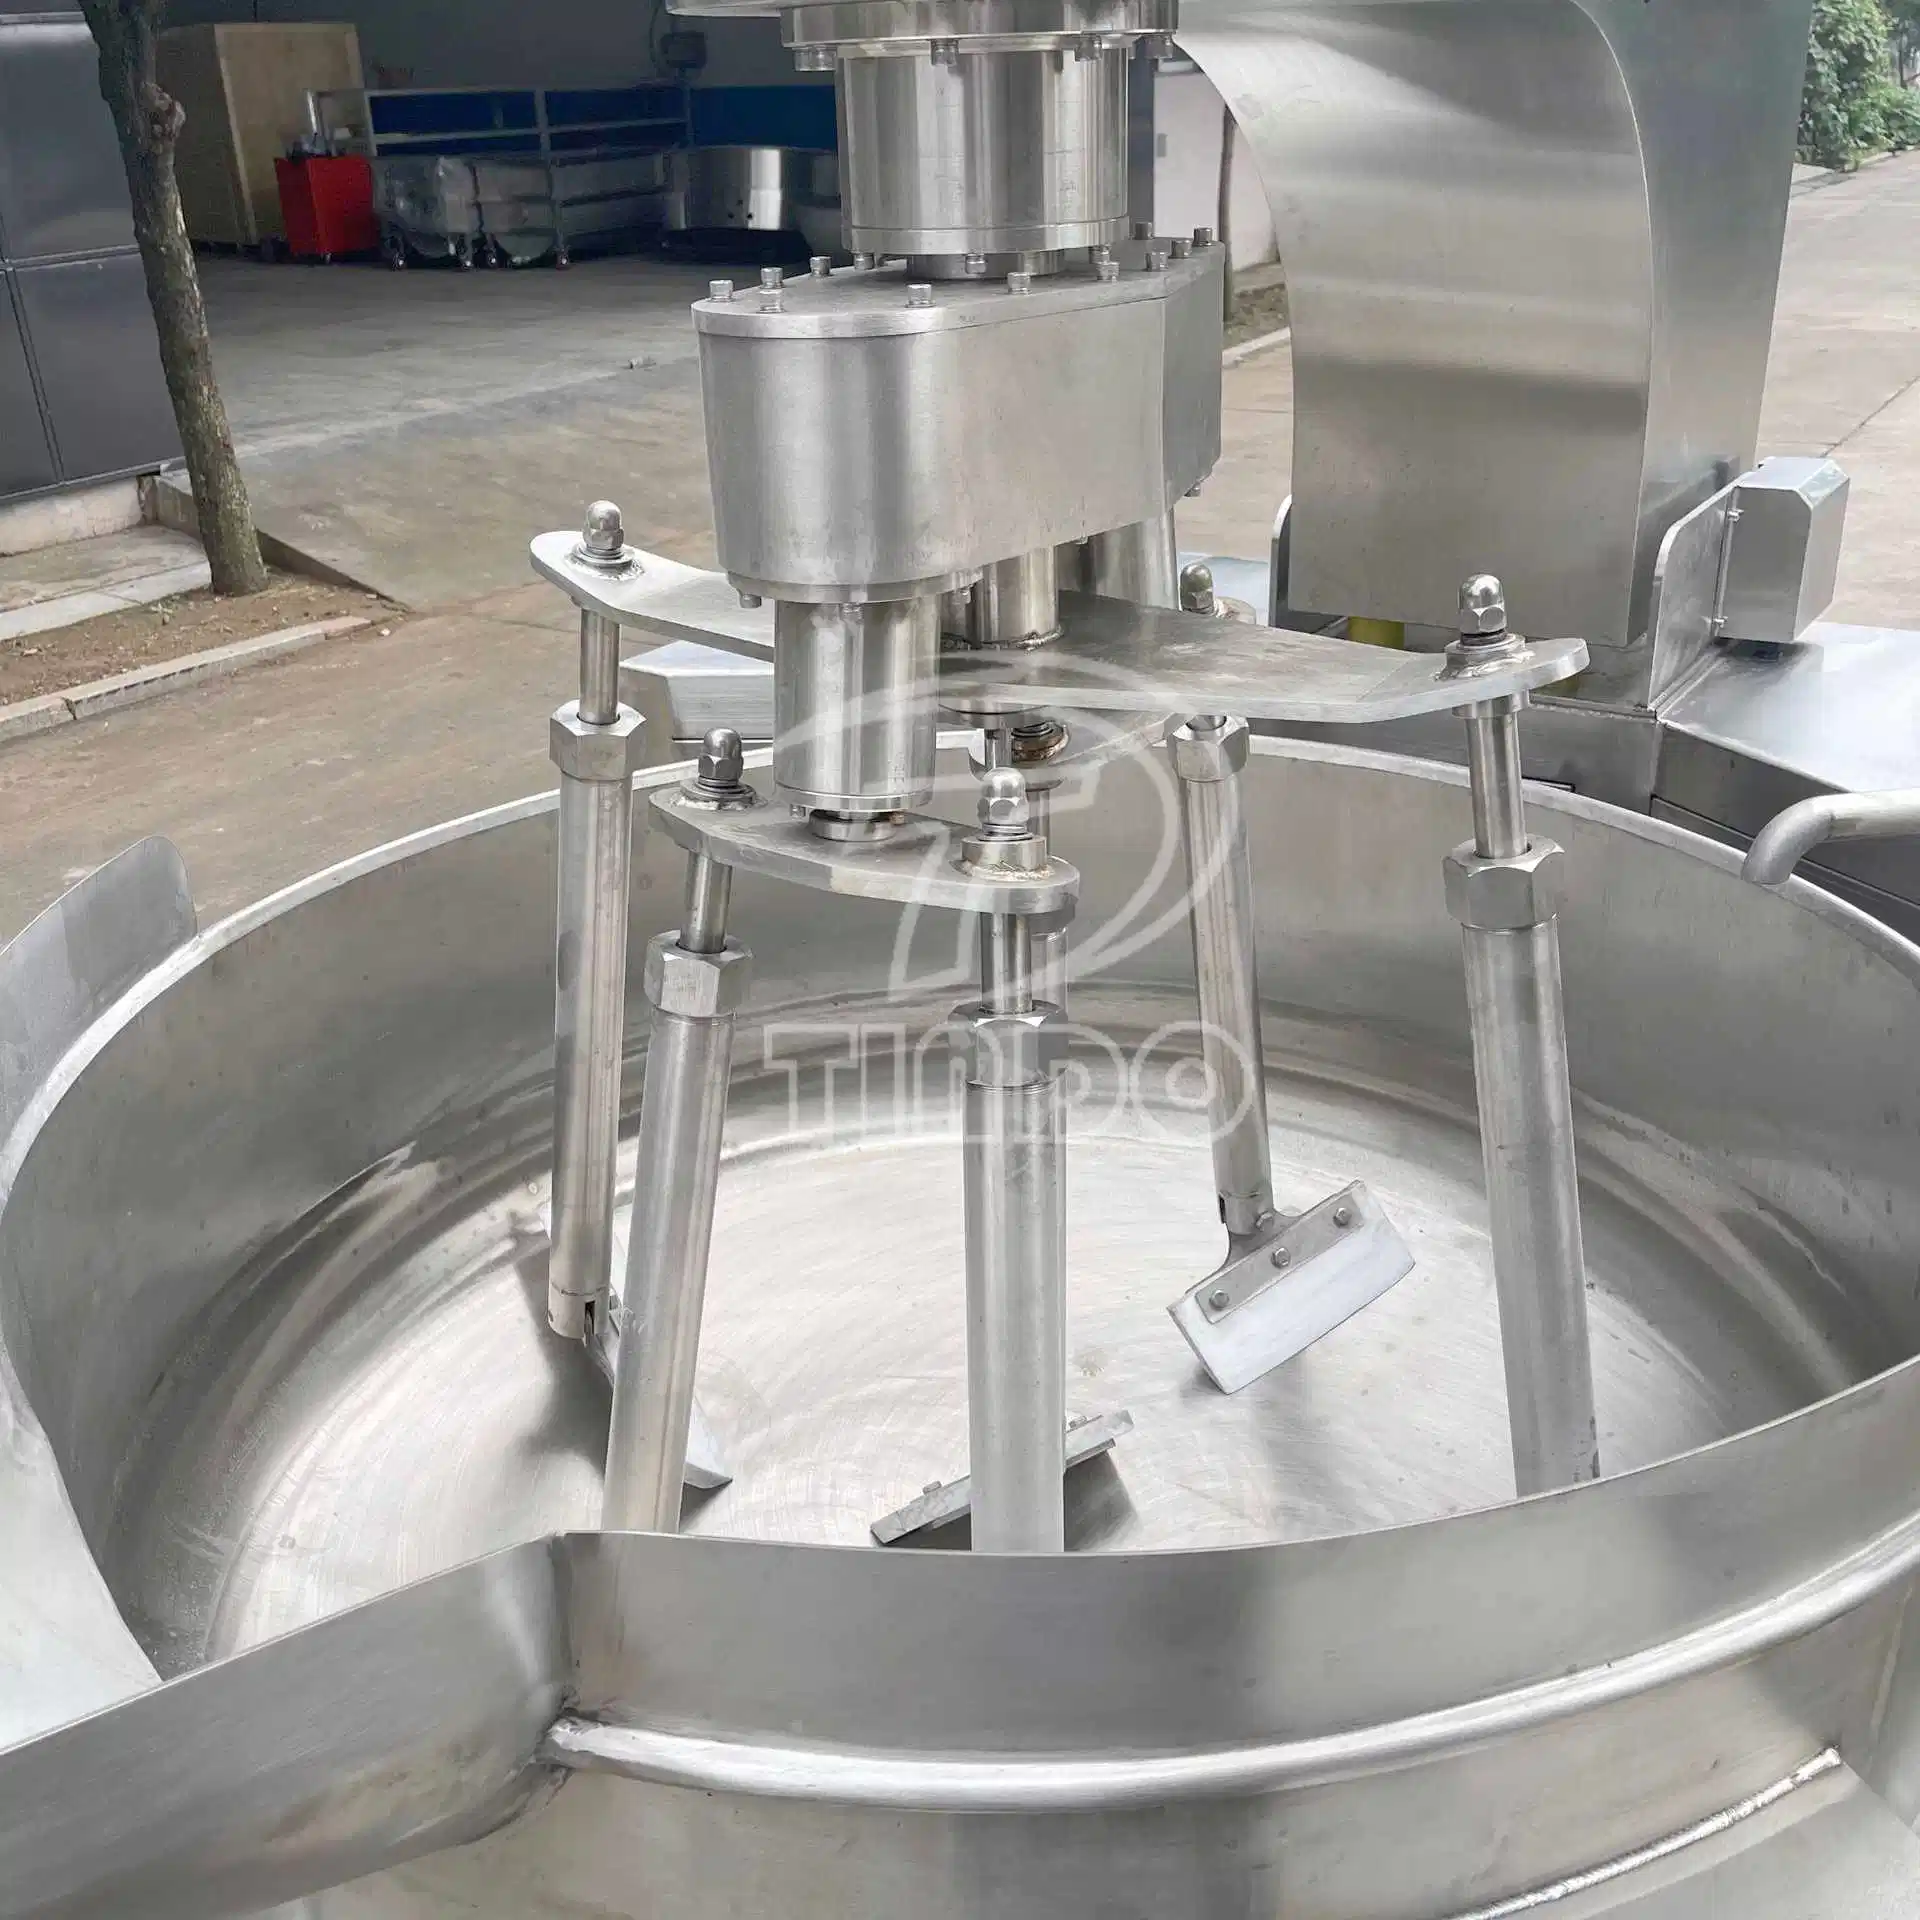 Multi-usage industriel de la machine de mélangeur de cuisine Cuiseur de mélange cuisine centrale de la restauration de l'équipement pour la vente